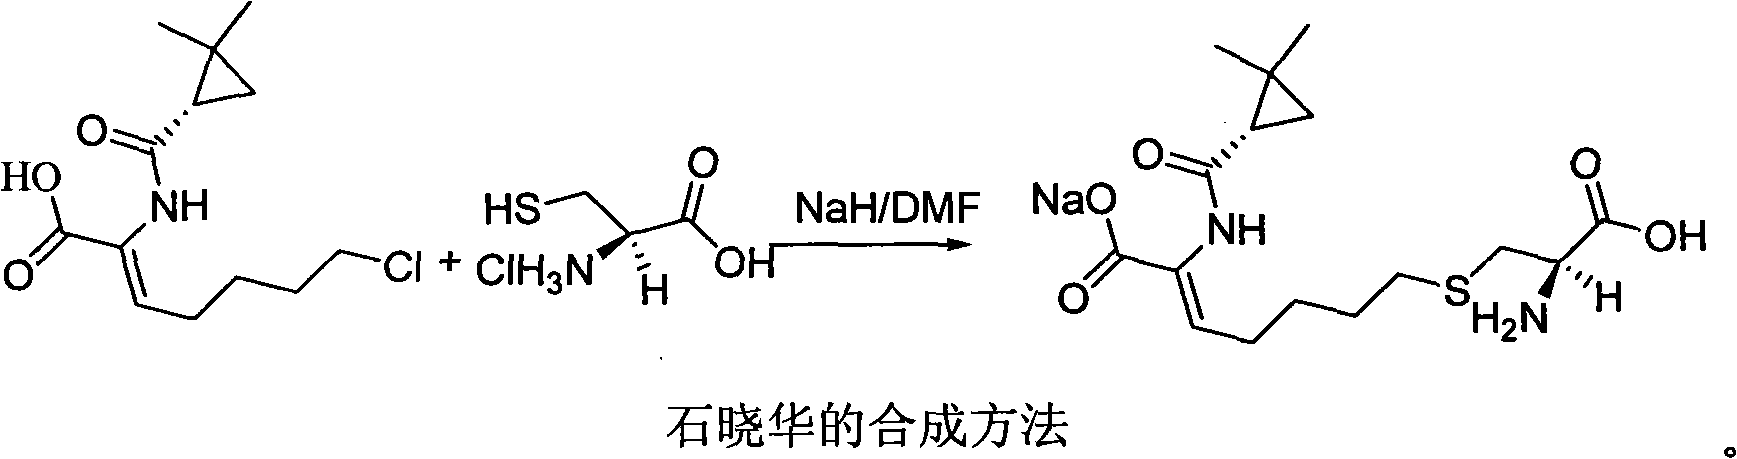 Method for synthesizing cilastatin sodium